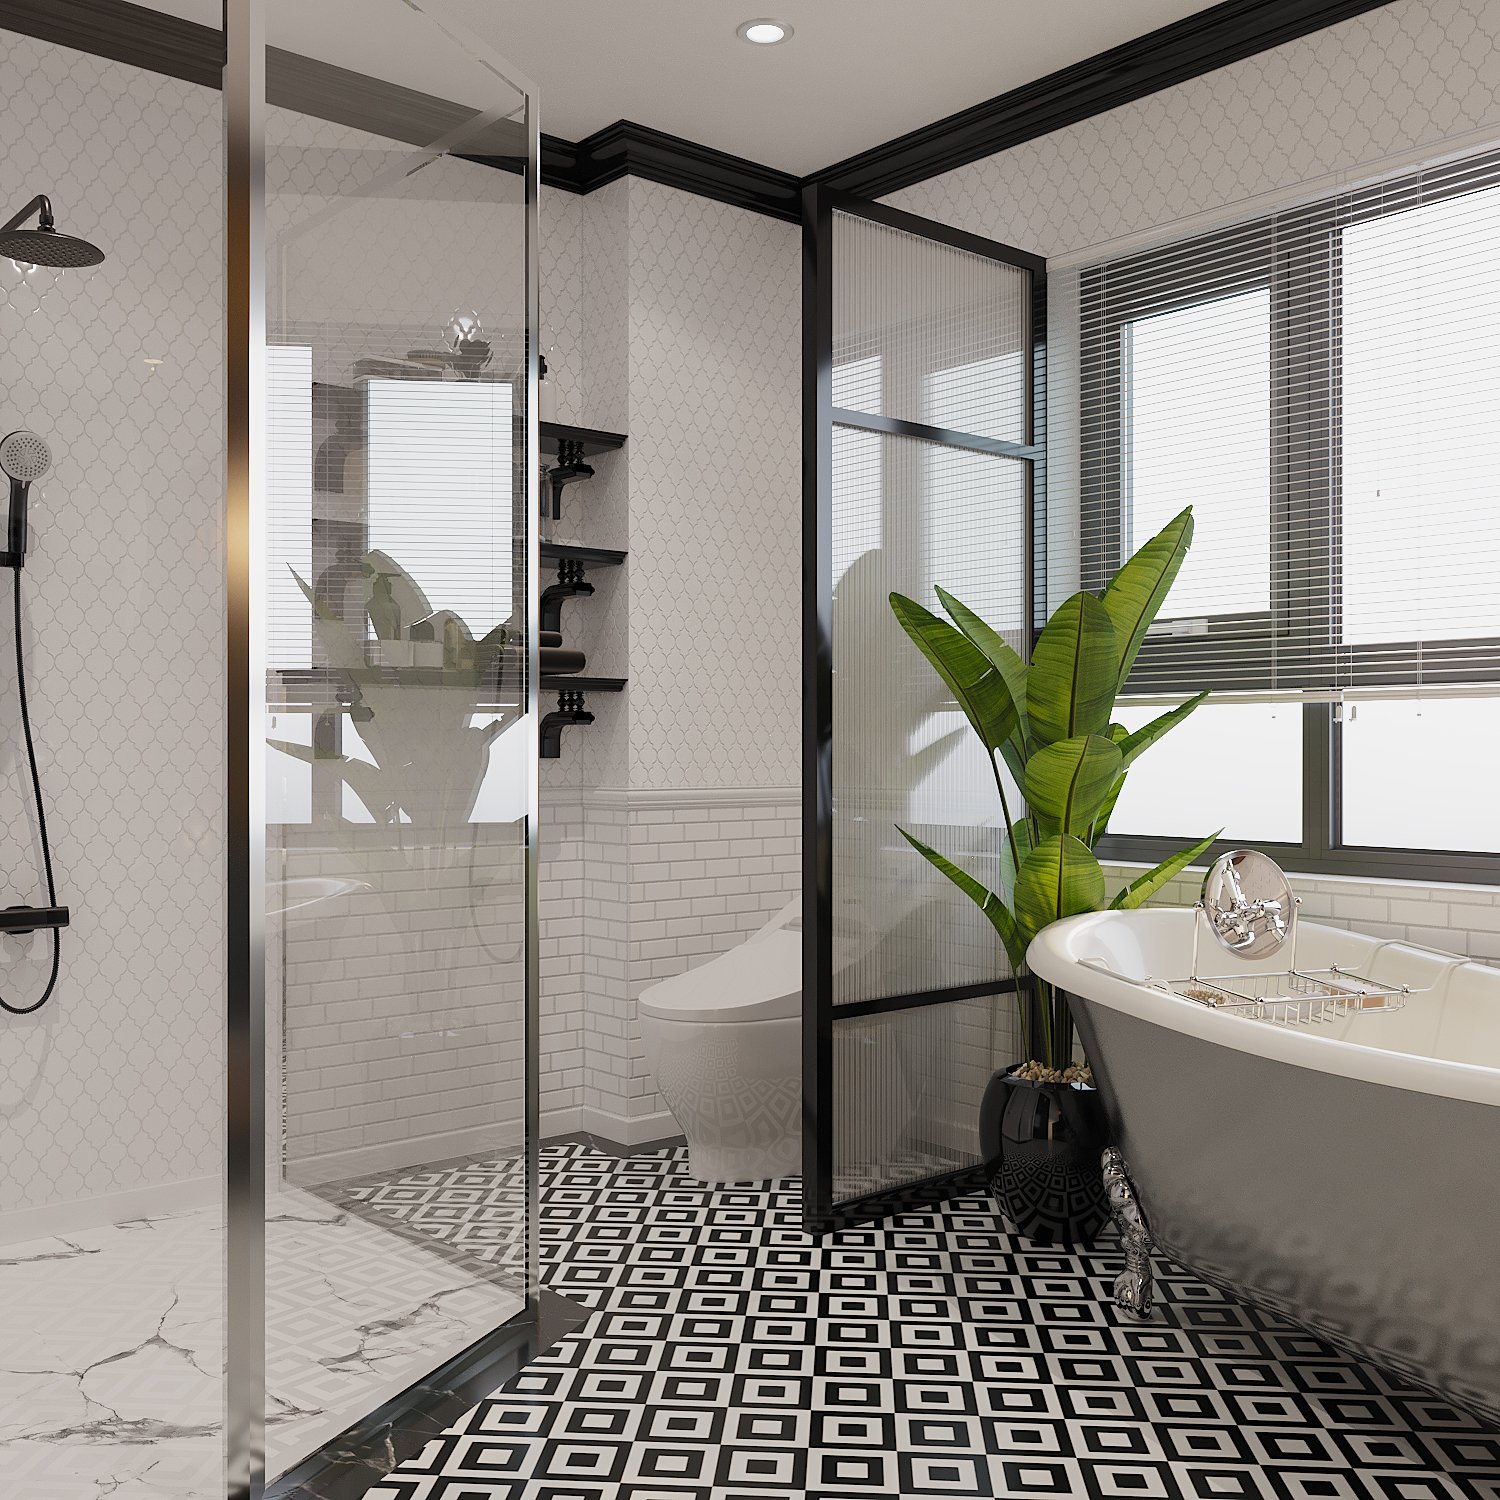 Phòng tắm khép kín sử dụng chất liệu và bảng màu hiện đại tạo cảm giác thư thái cho người dùng. Chậu cảnh xanh tốt như điểm nhấn màu sắc sinh động.